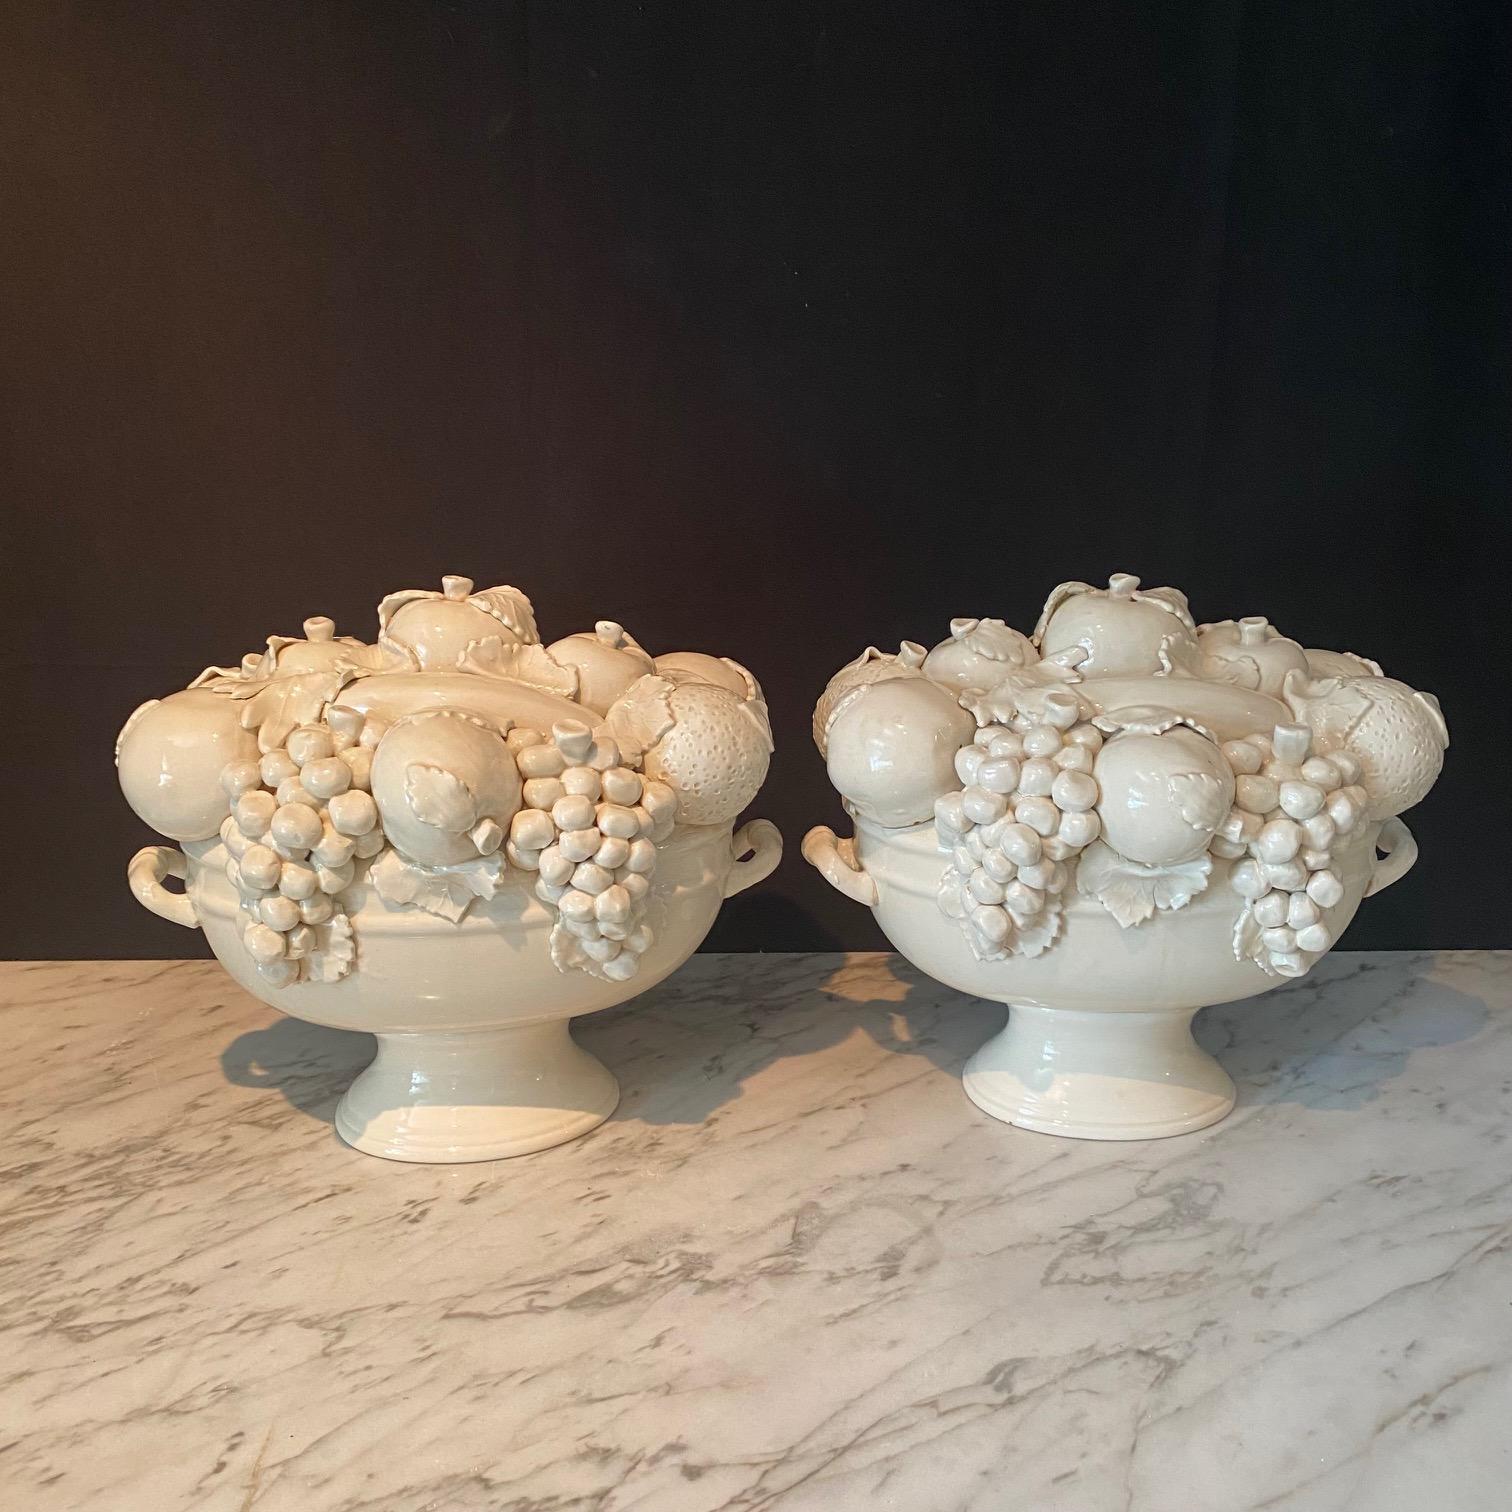 Large Antique Italian White Porcelain Cornucopia Fruit Bowl Centerpiece For Sale 3